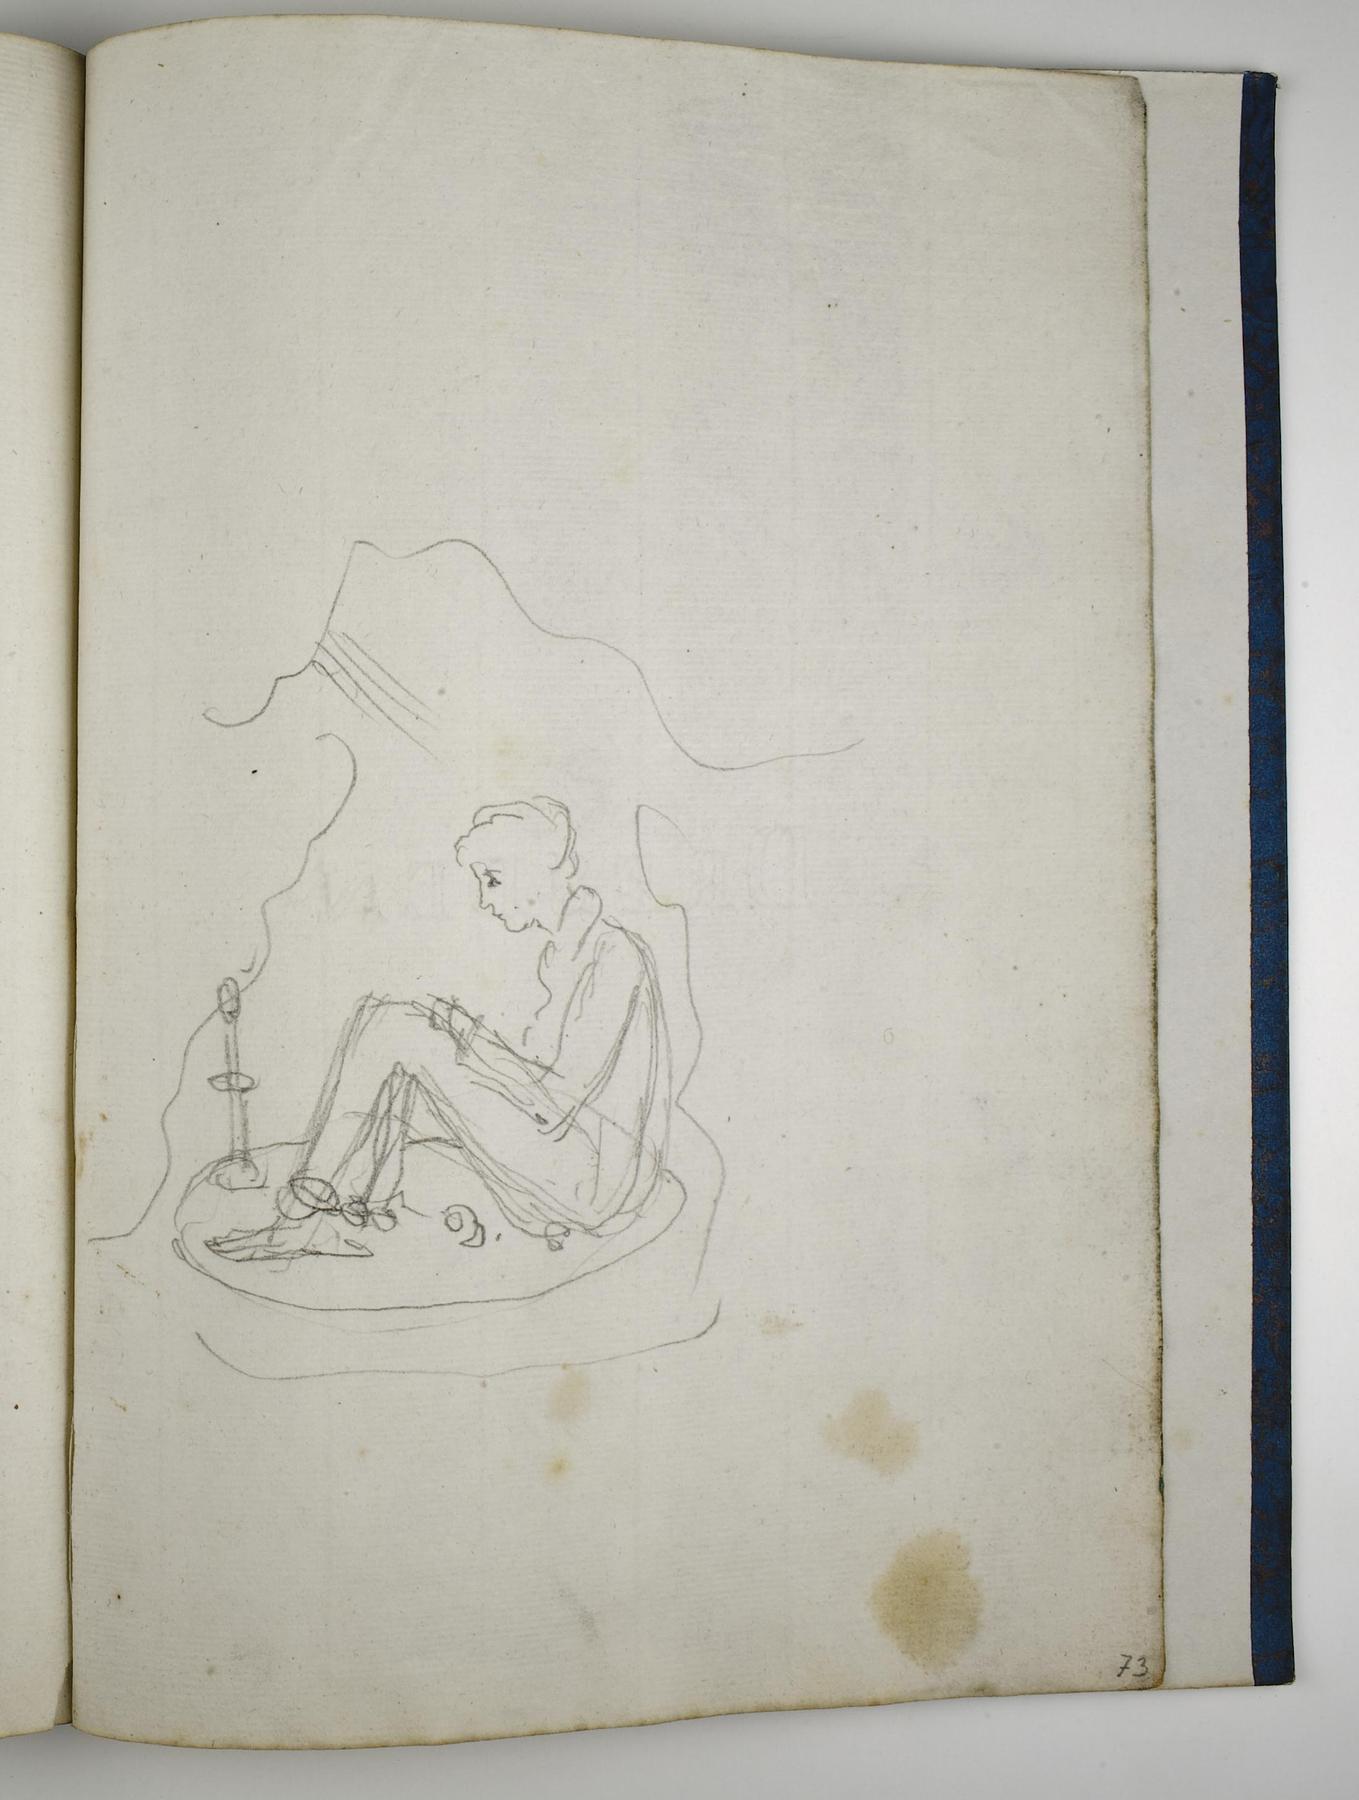 Ung figur siddende i en hule(?), D1588,73